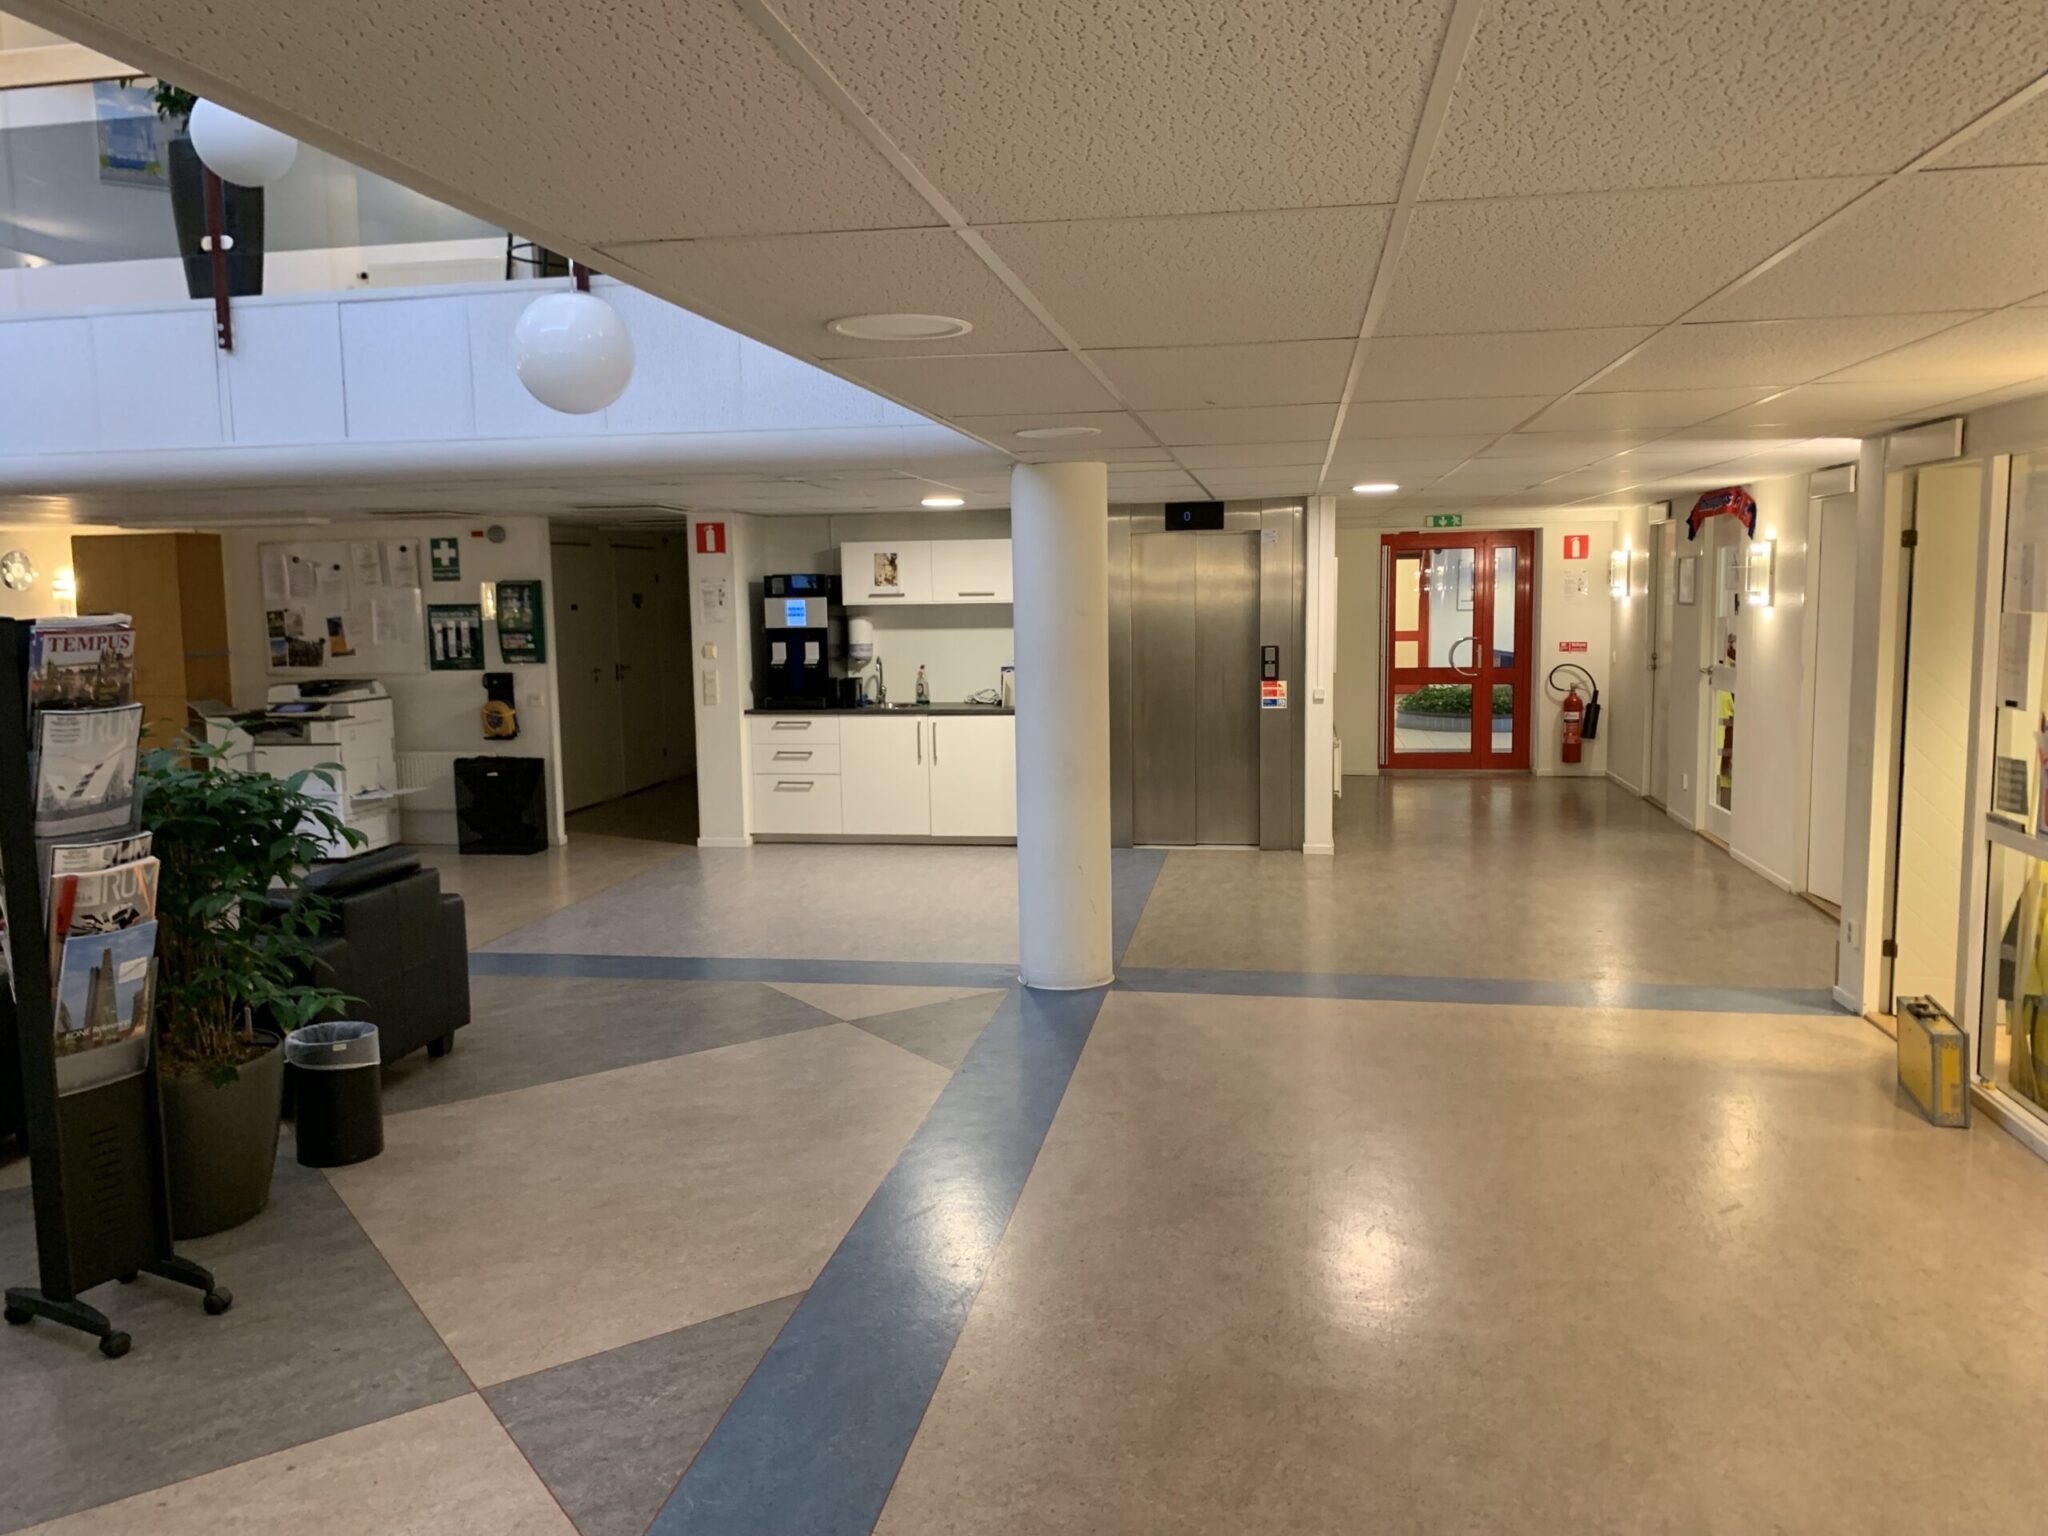 Vinnergi Malmö Plan 1 Lounge - korridor 2019-11-15